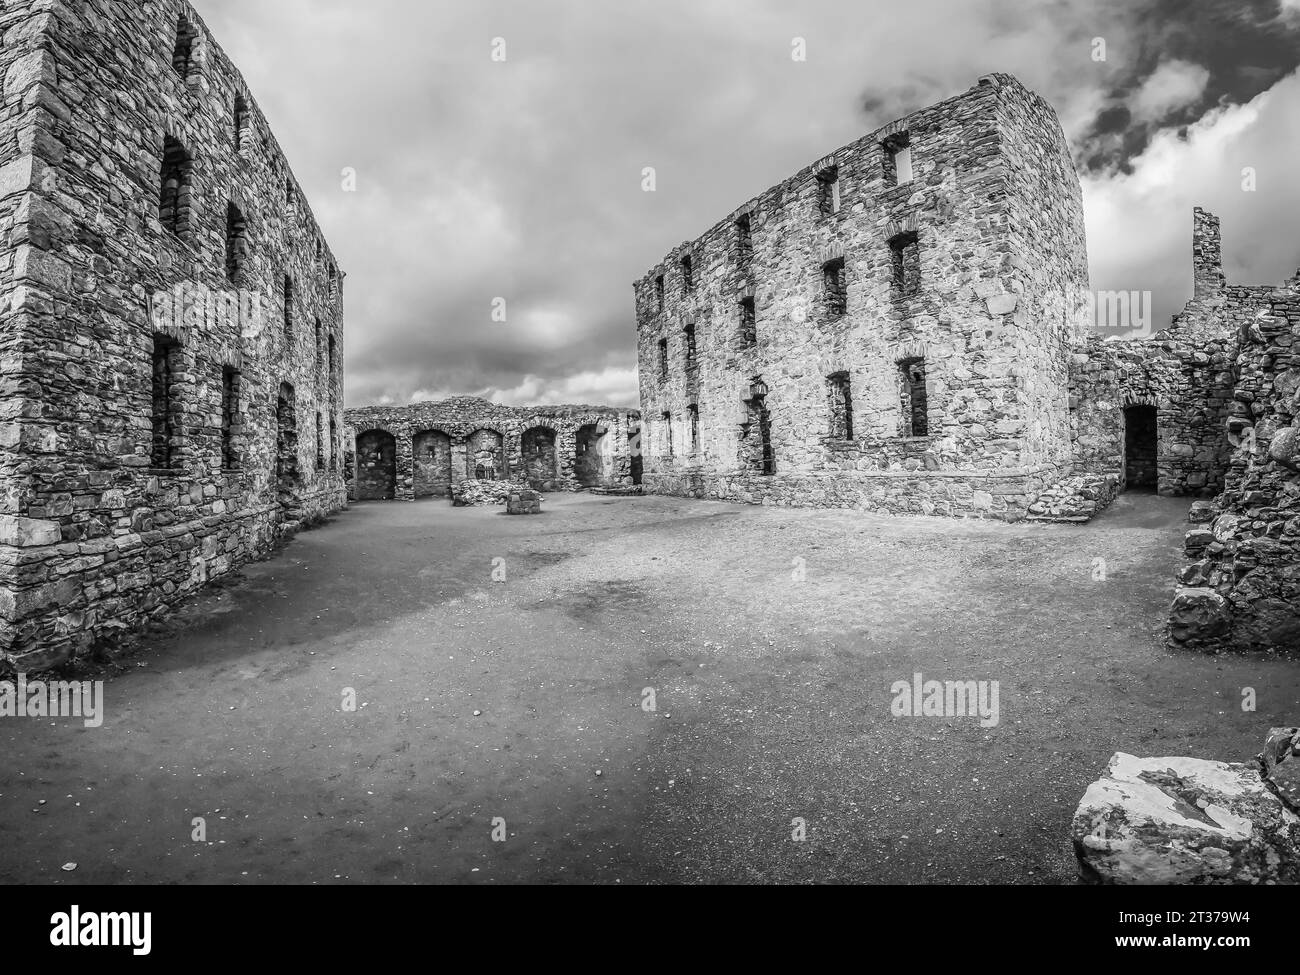 L'image est des ruines de la caserne militaire de Ruthven. Construit en 1721, pour surveiller les Highlands après l'échec du soulèvement jacobite de 1715 Banque D'Images